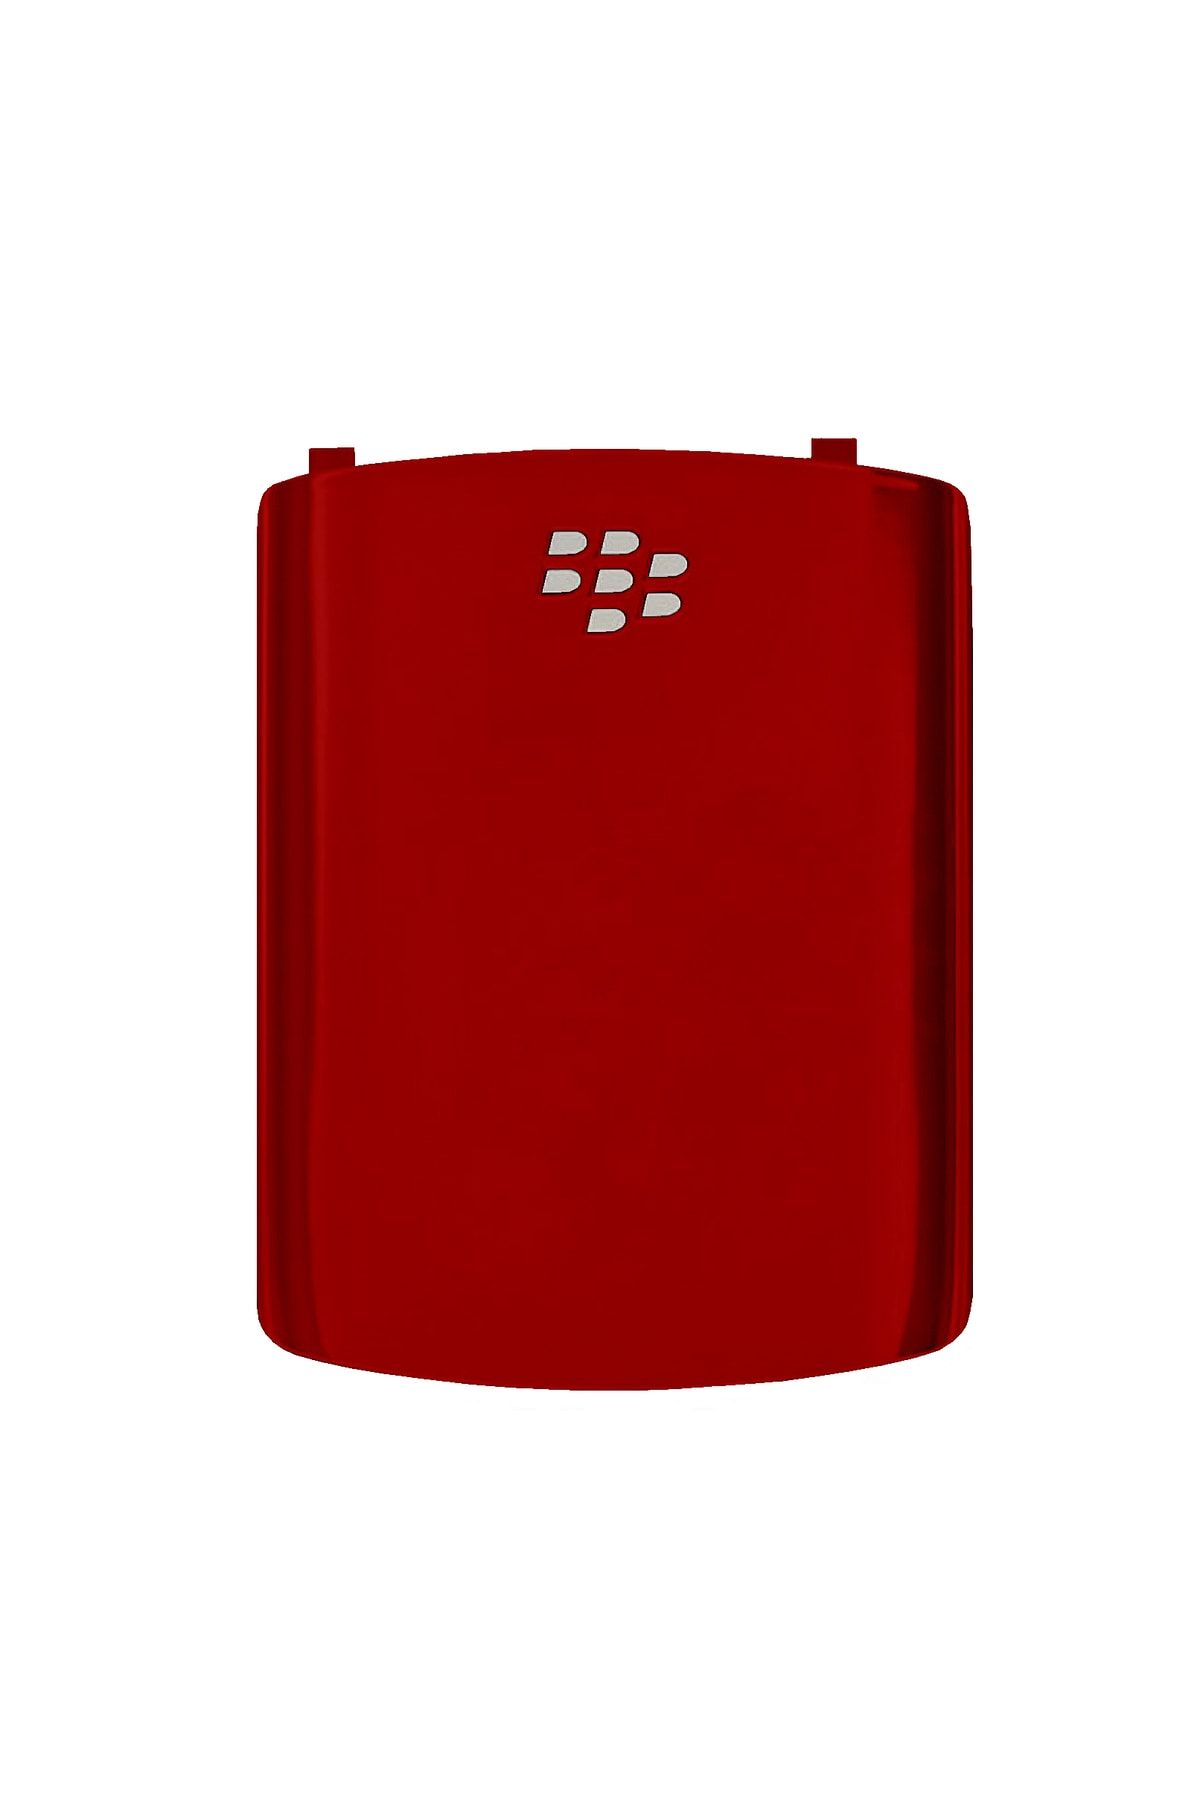 Nokta Teknik Blackberry 8520 Curve Arka Kapak Batarya Pil Kapağı